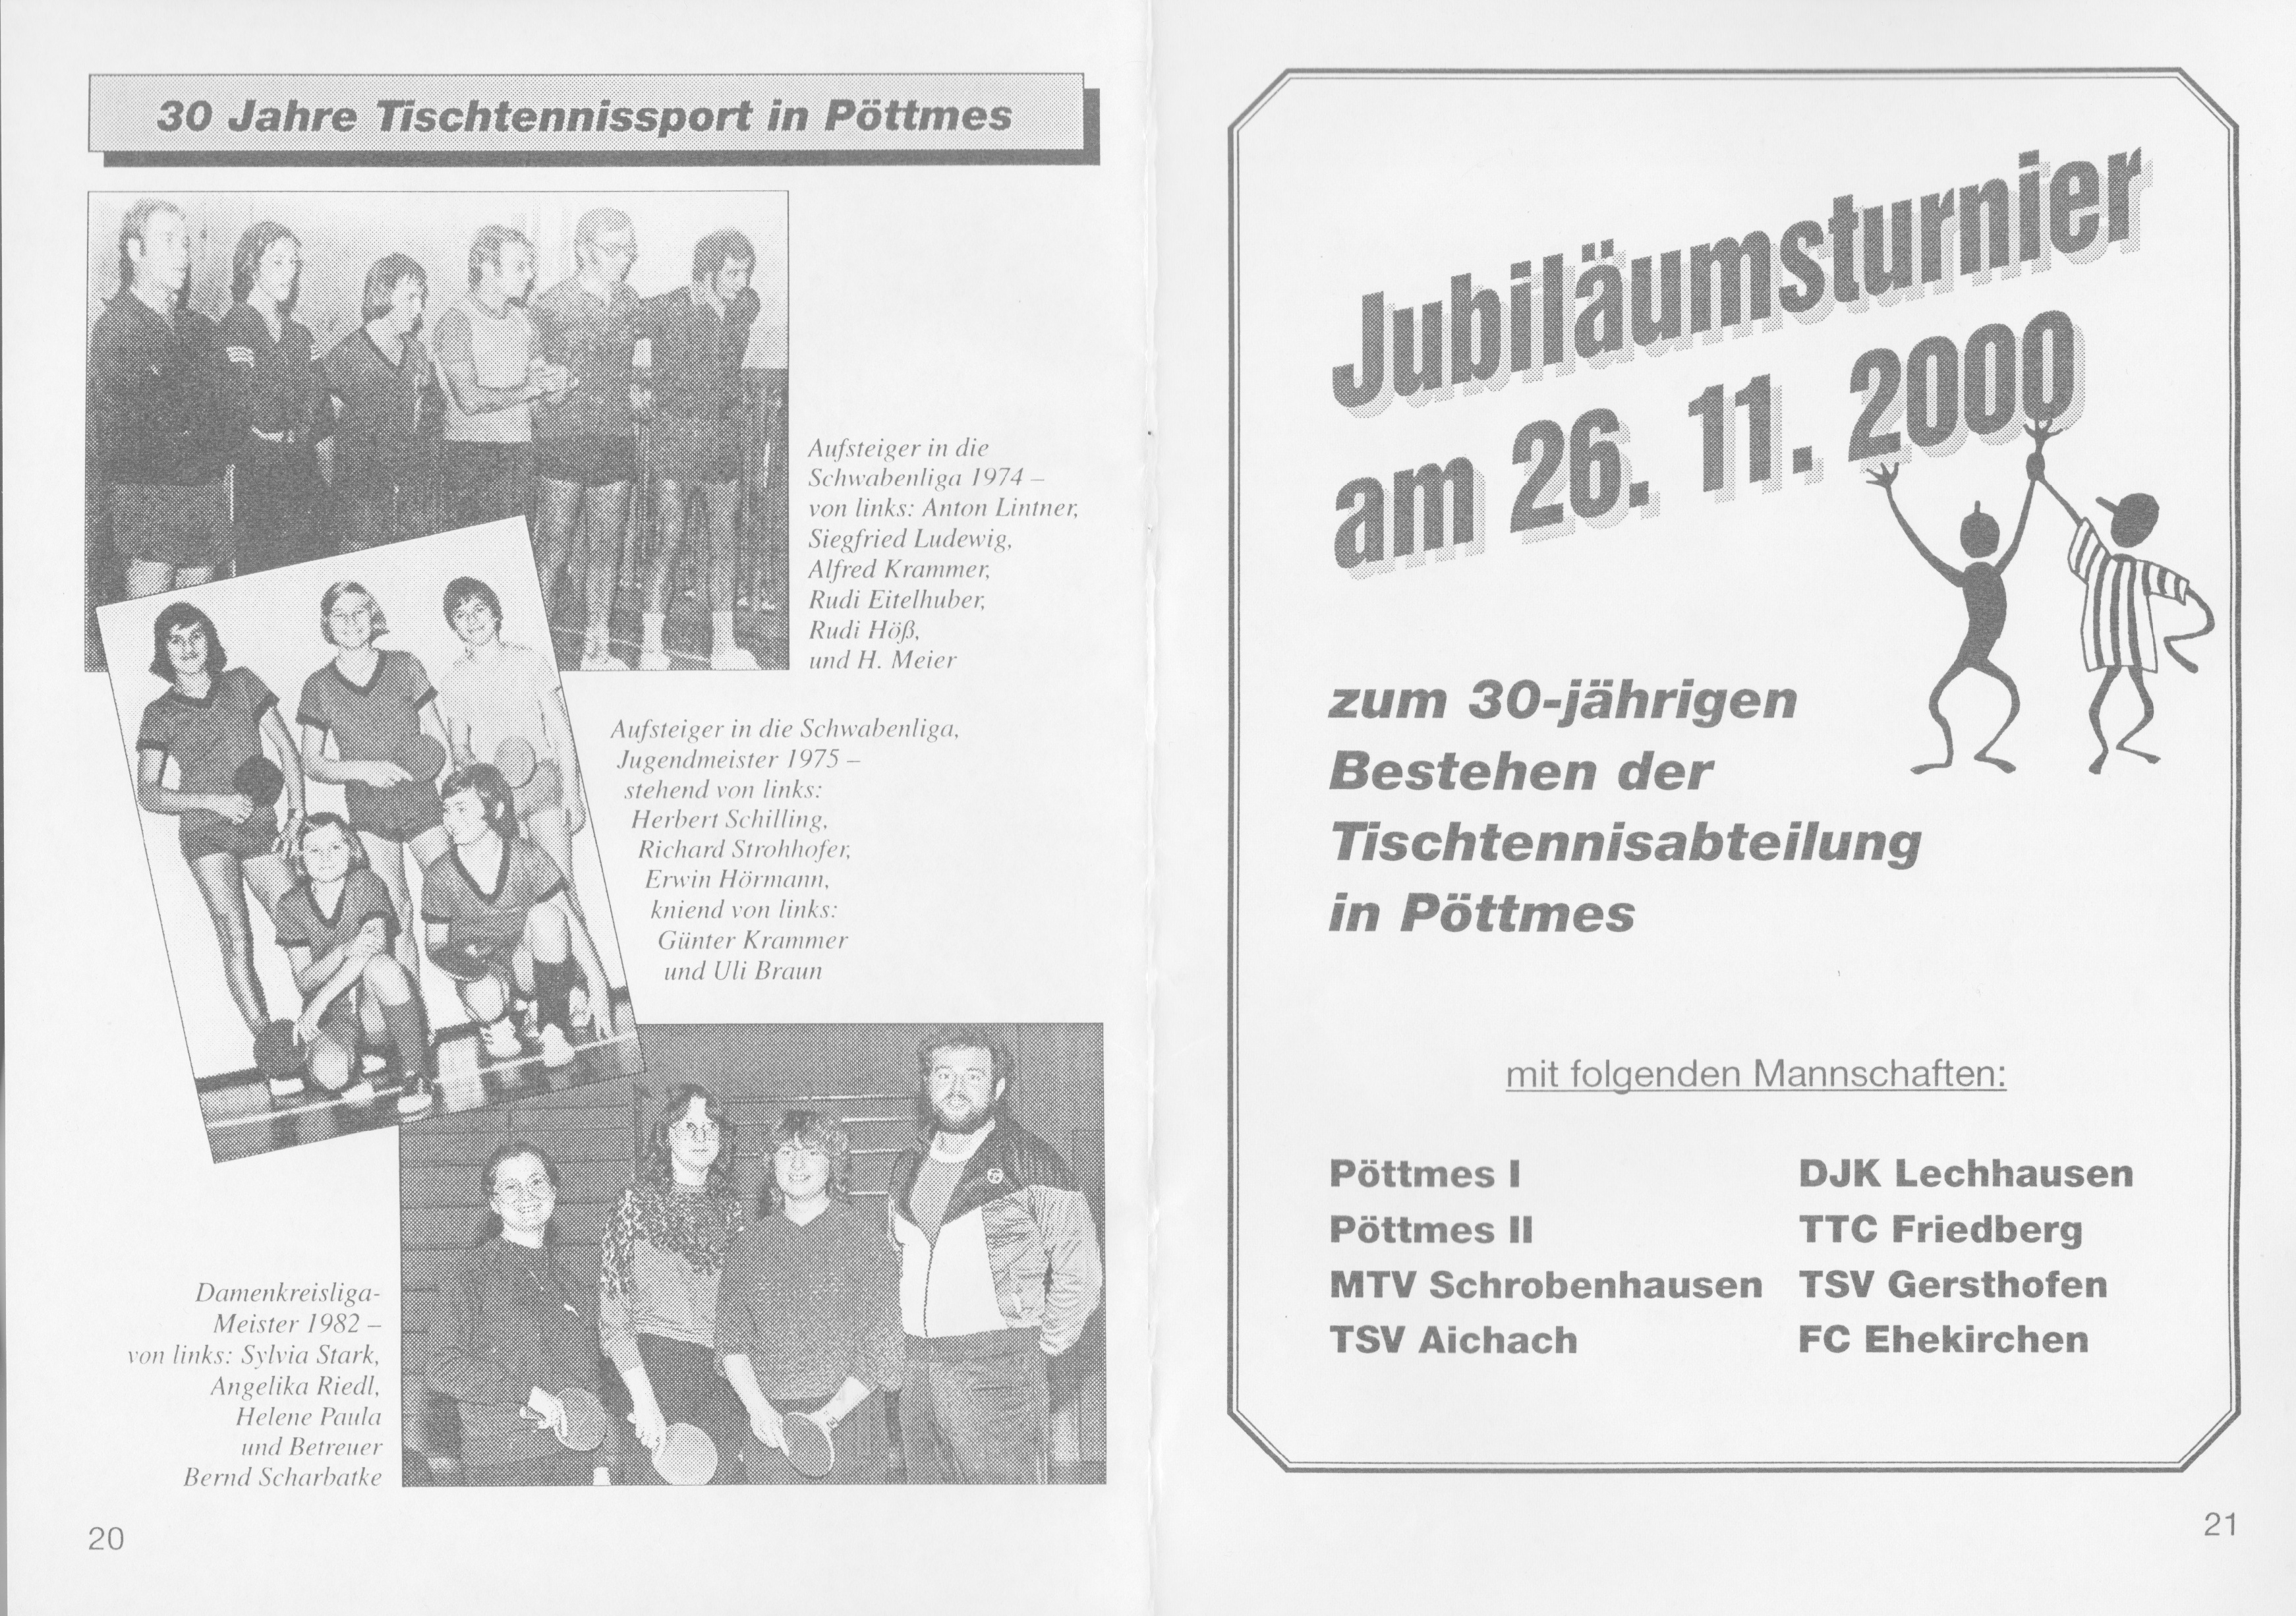 Auszug aus dem Programmheft 2000/2001 zum 30-jährigen Jubiläum der Tischtennis-Abteilung